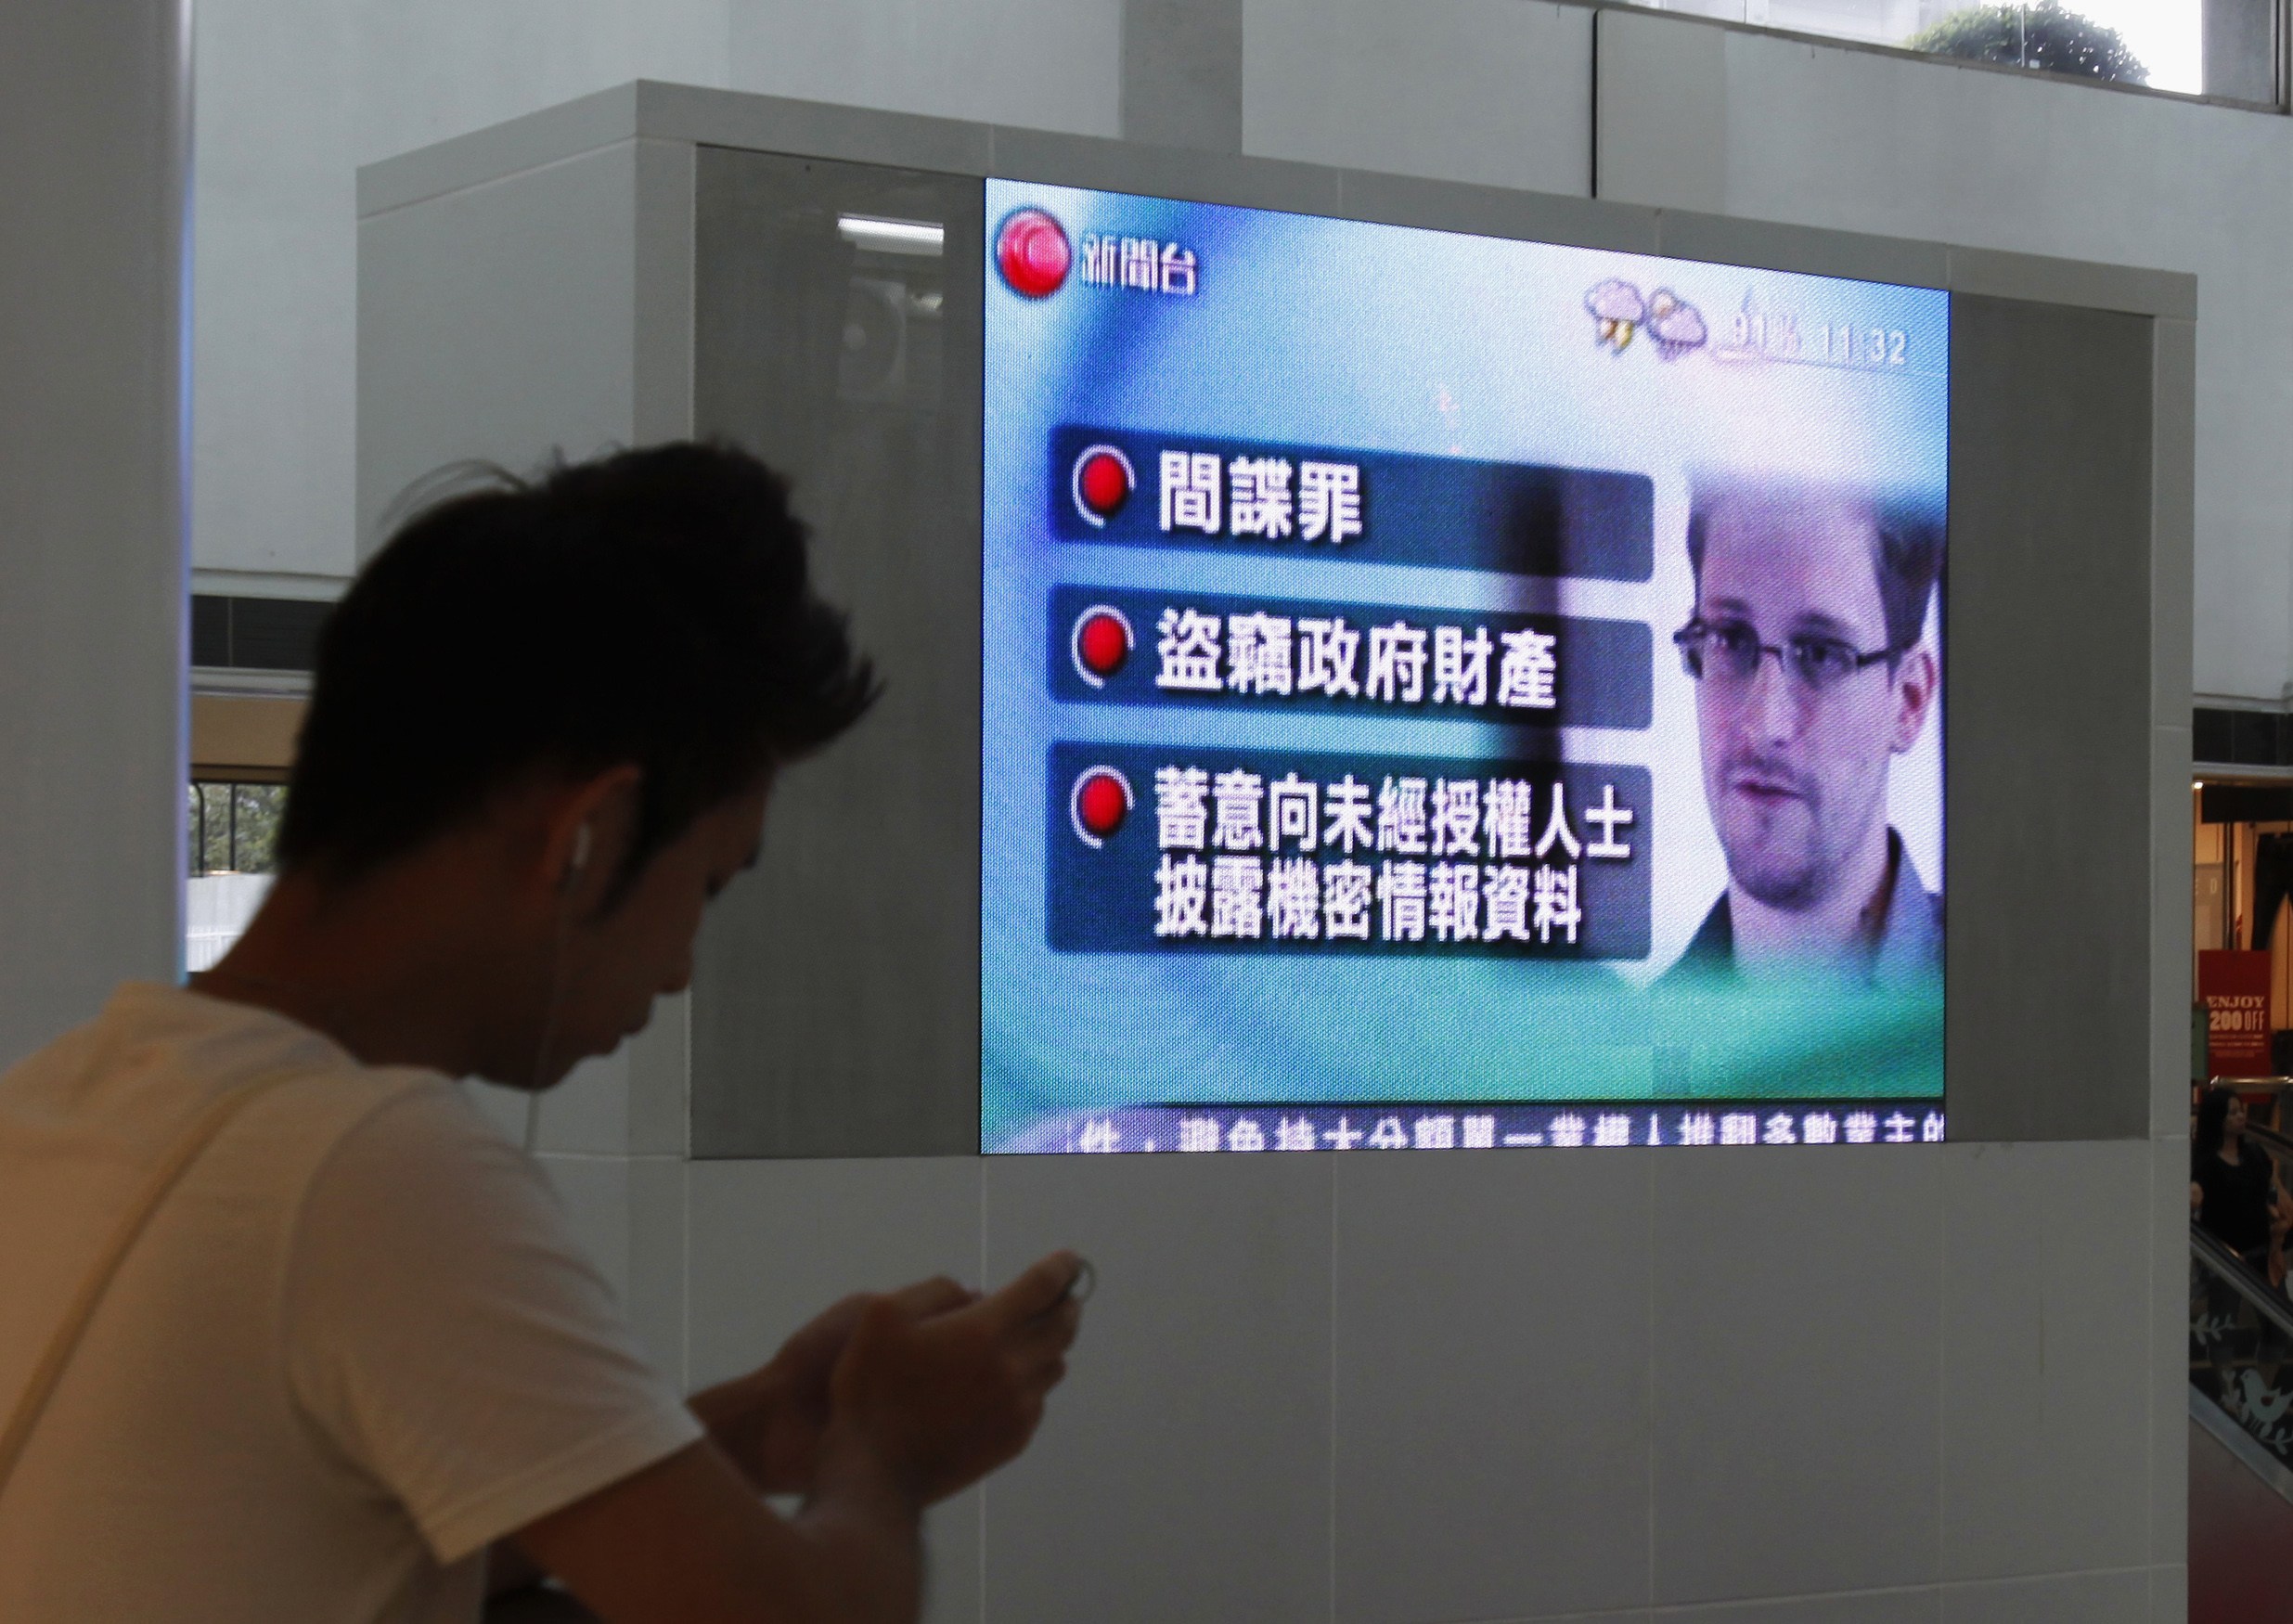 “No deberían permitir” a Snowden seguir viajando, dice departamento de Estado de EEUU